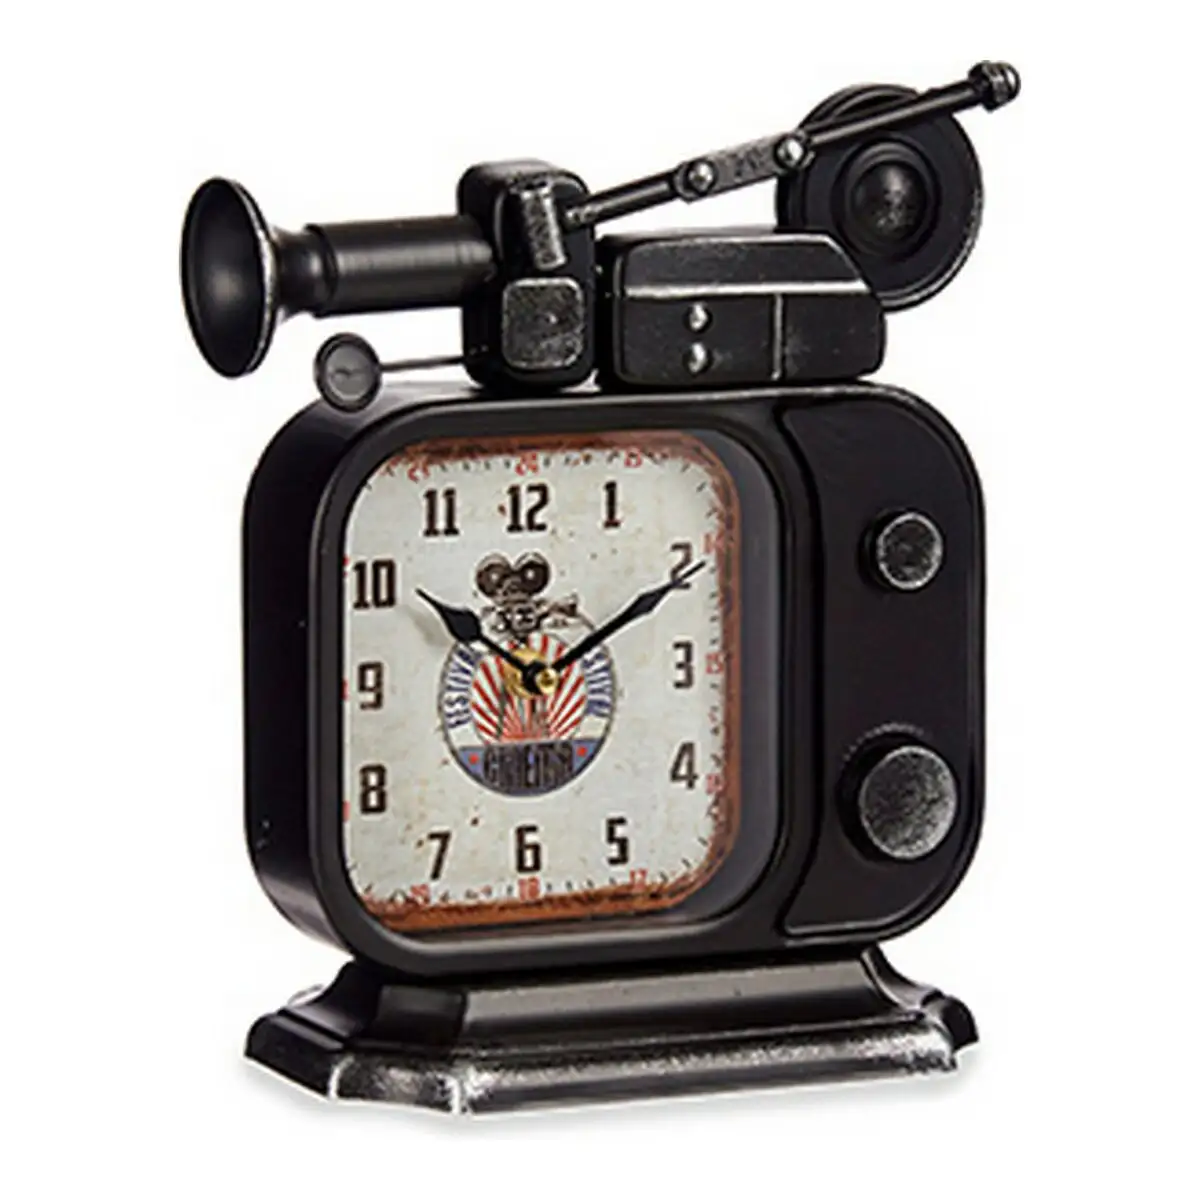 Horloge de table camera appareil photo metal 10 x 28 x 25 cm _6349. DIAYTAR SENEGAL - L'Art de Choisir, l'Art de S'émerveiller. Explorez notre gamme de produits et laissez-vous émerveiller par des créations authentiques et des designs modernes.